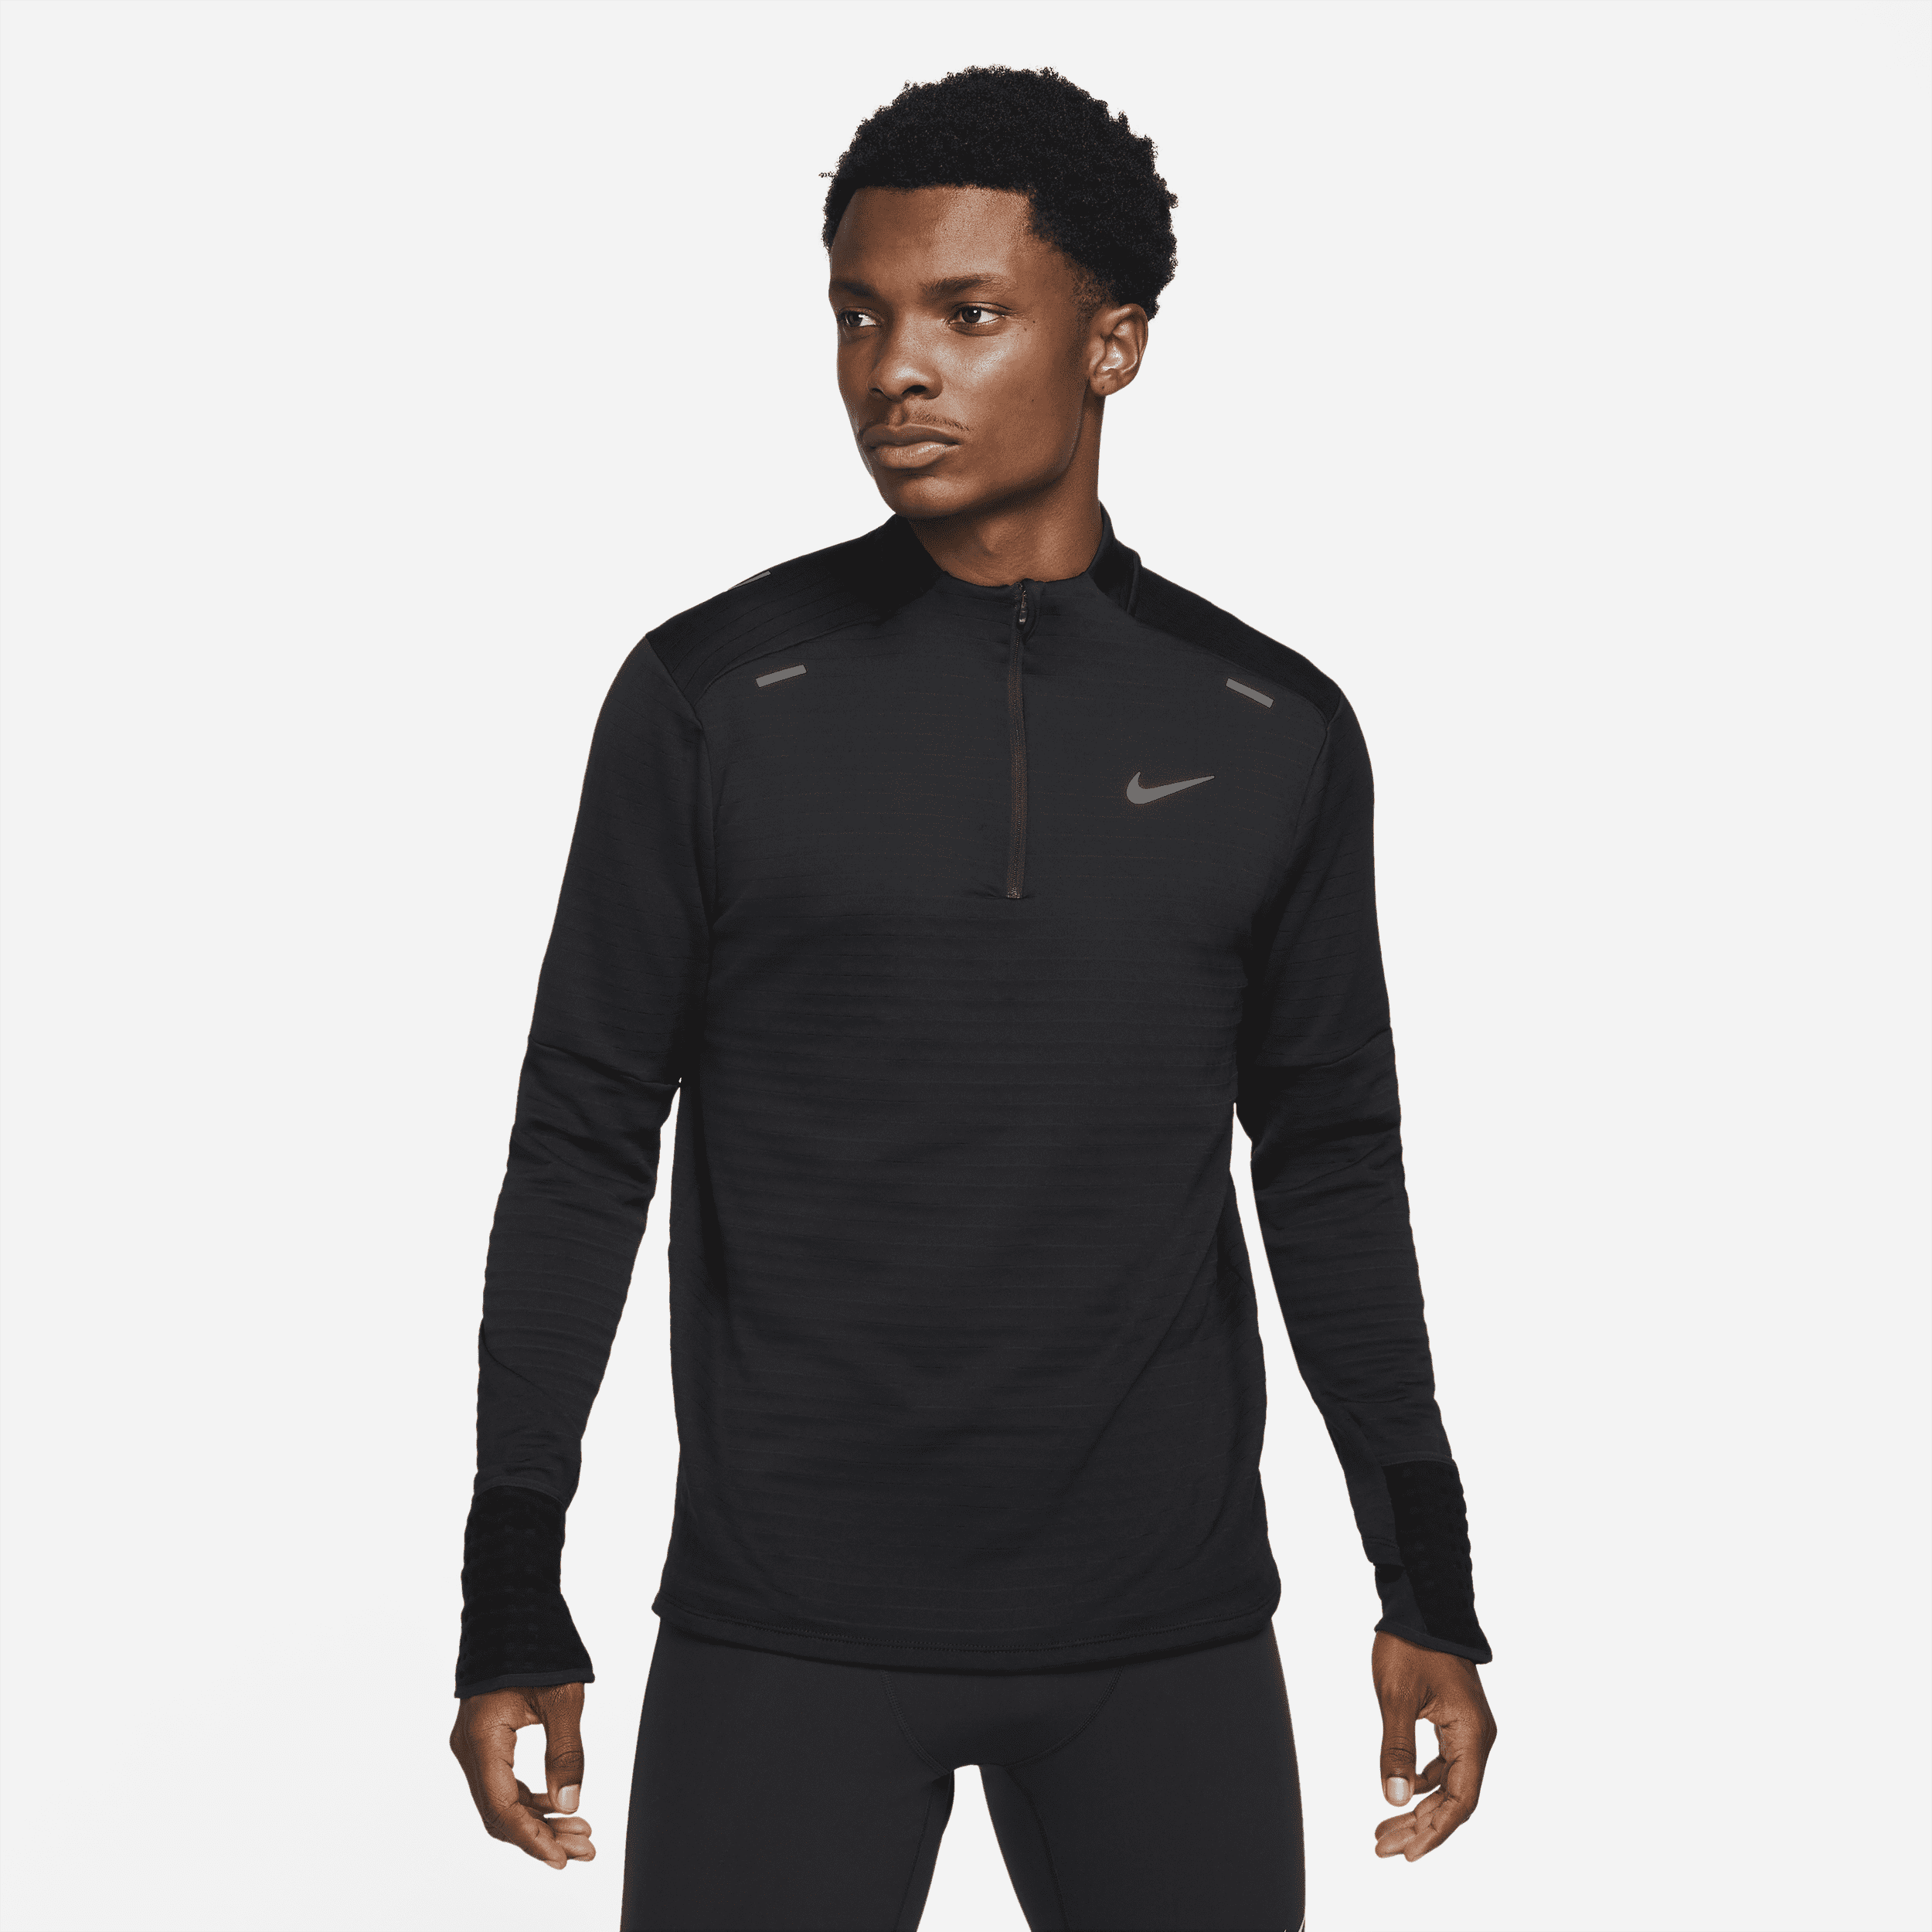 Maglia da running con zip a 1/4 Nike Therma-FIT Repel - Uomo - Nero